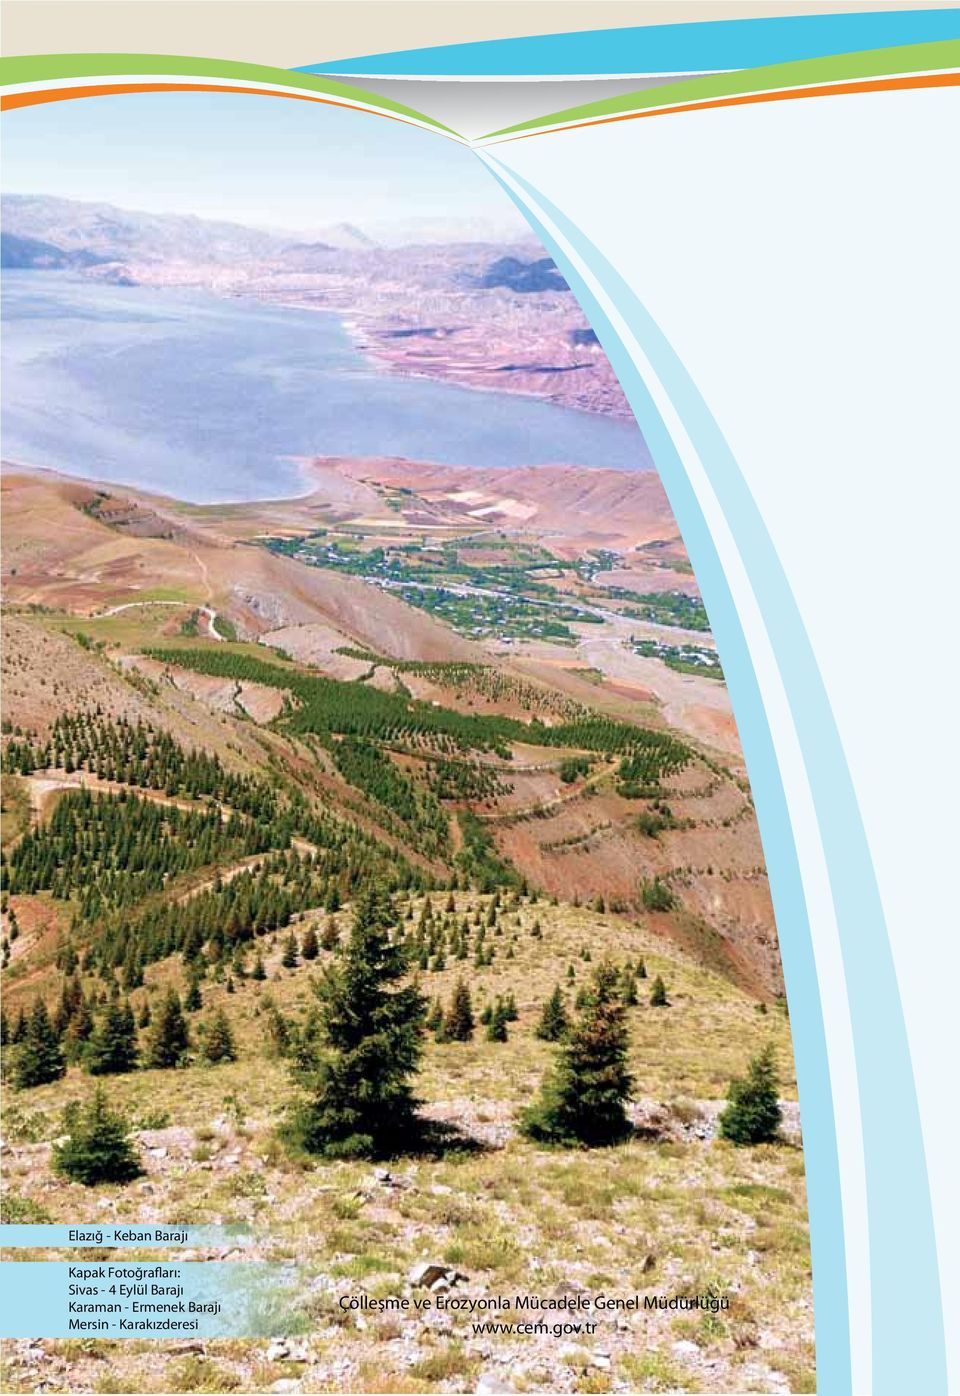 Barajı Mersin - Karakızderesi Çölleşme ve